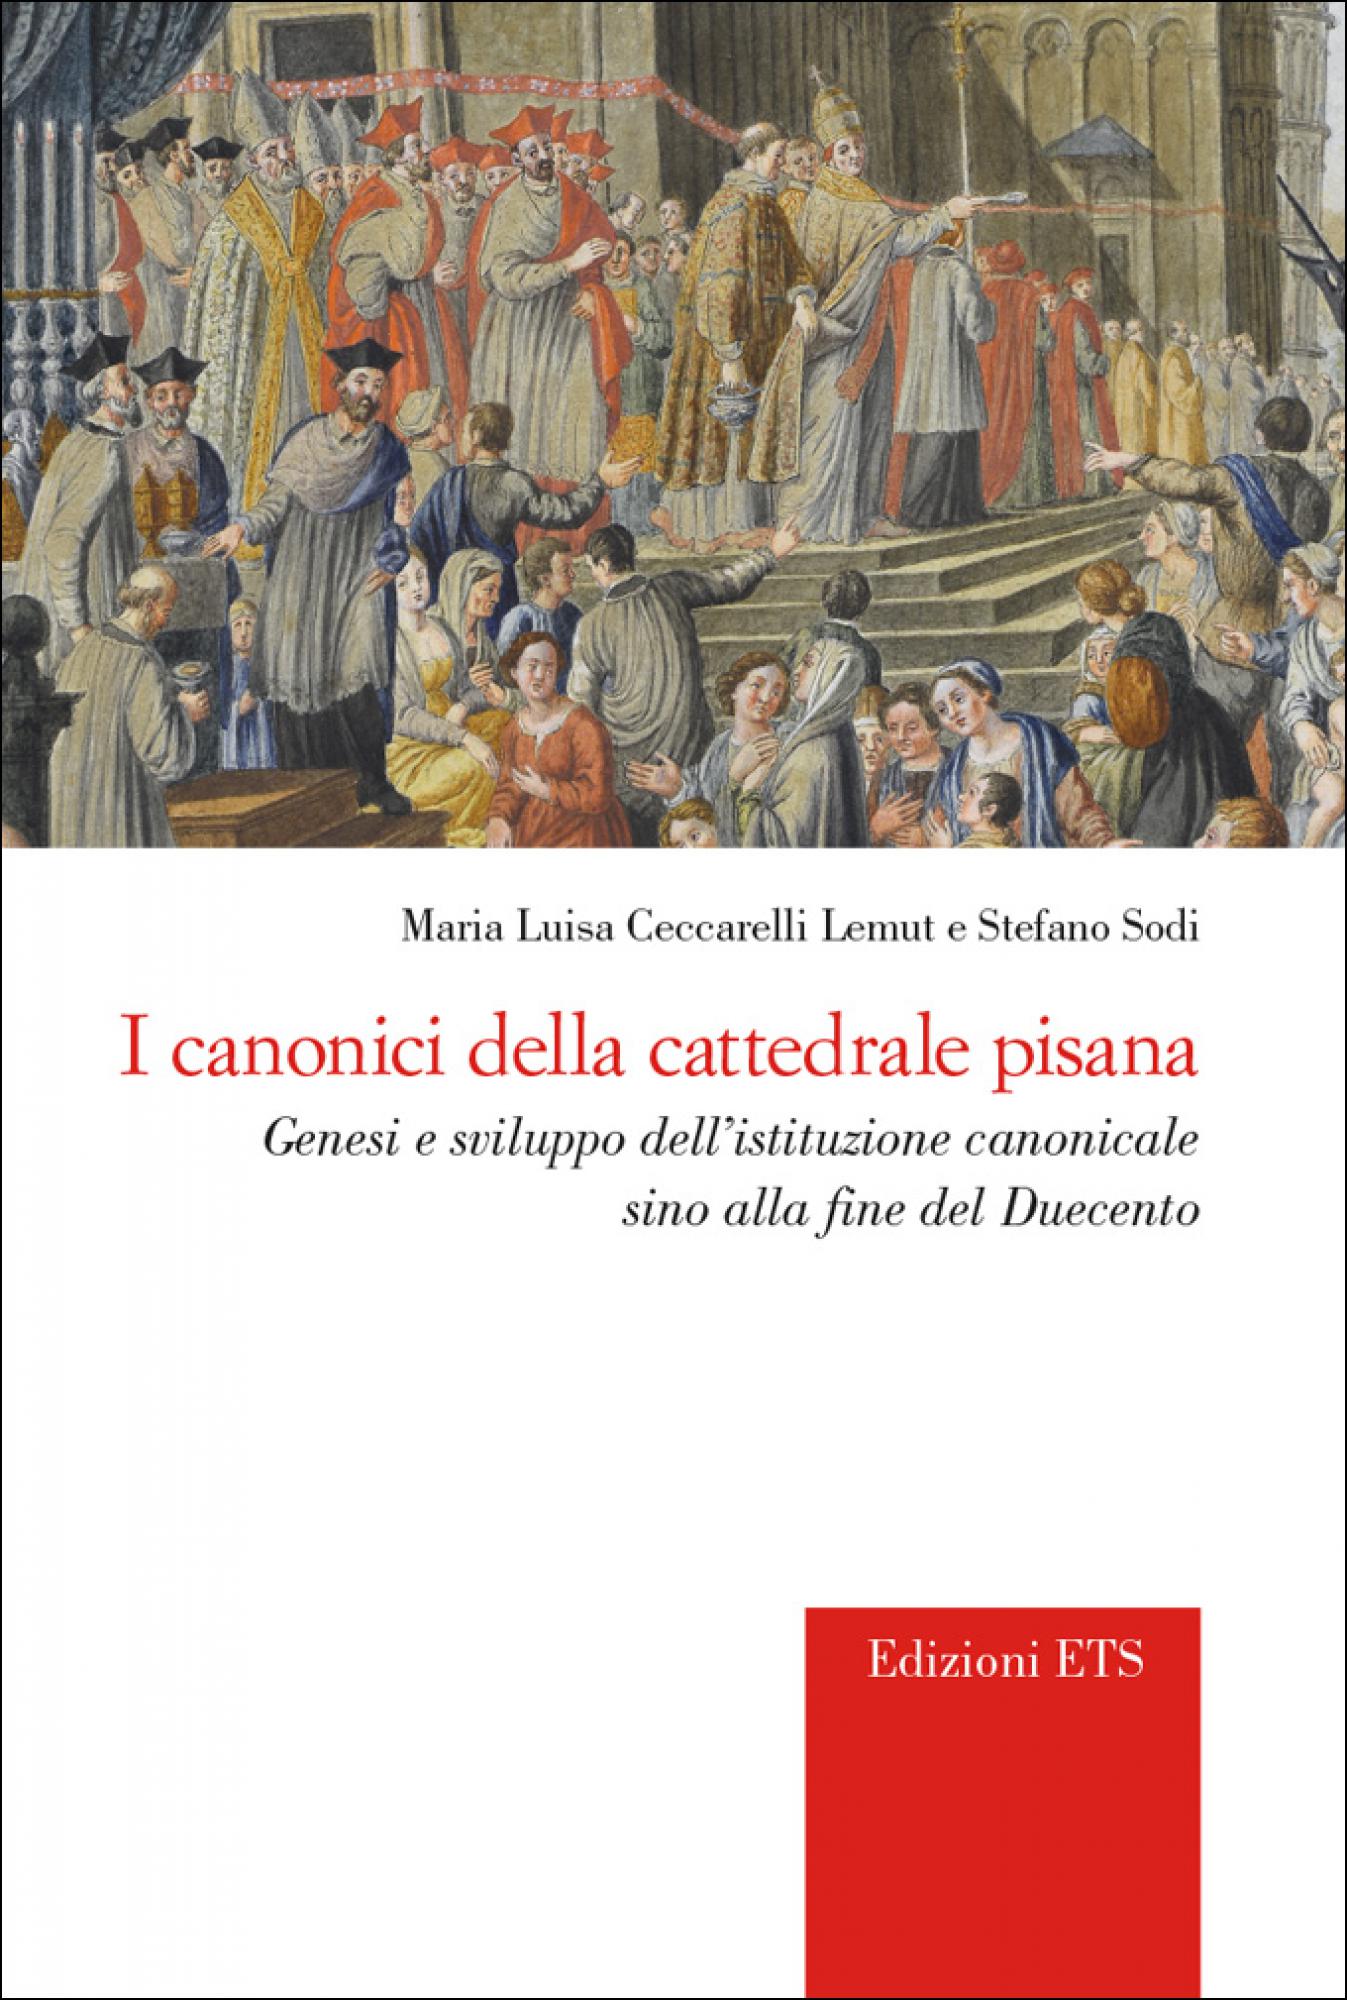 I canonici della cattedrale pisana.Genesi e sviluppo dell'istituzione canonicale sino alla fine del Duecento